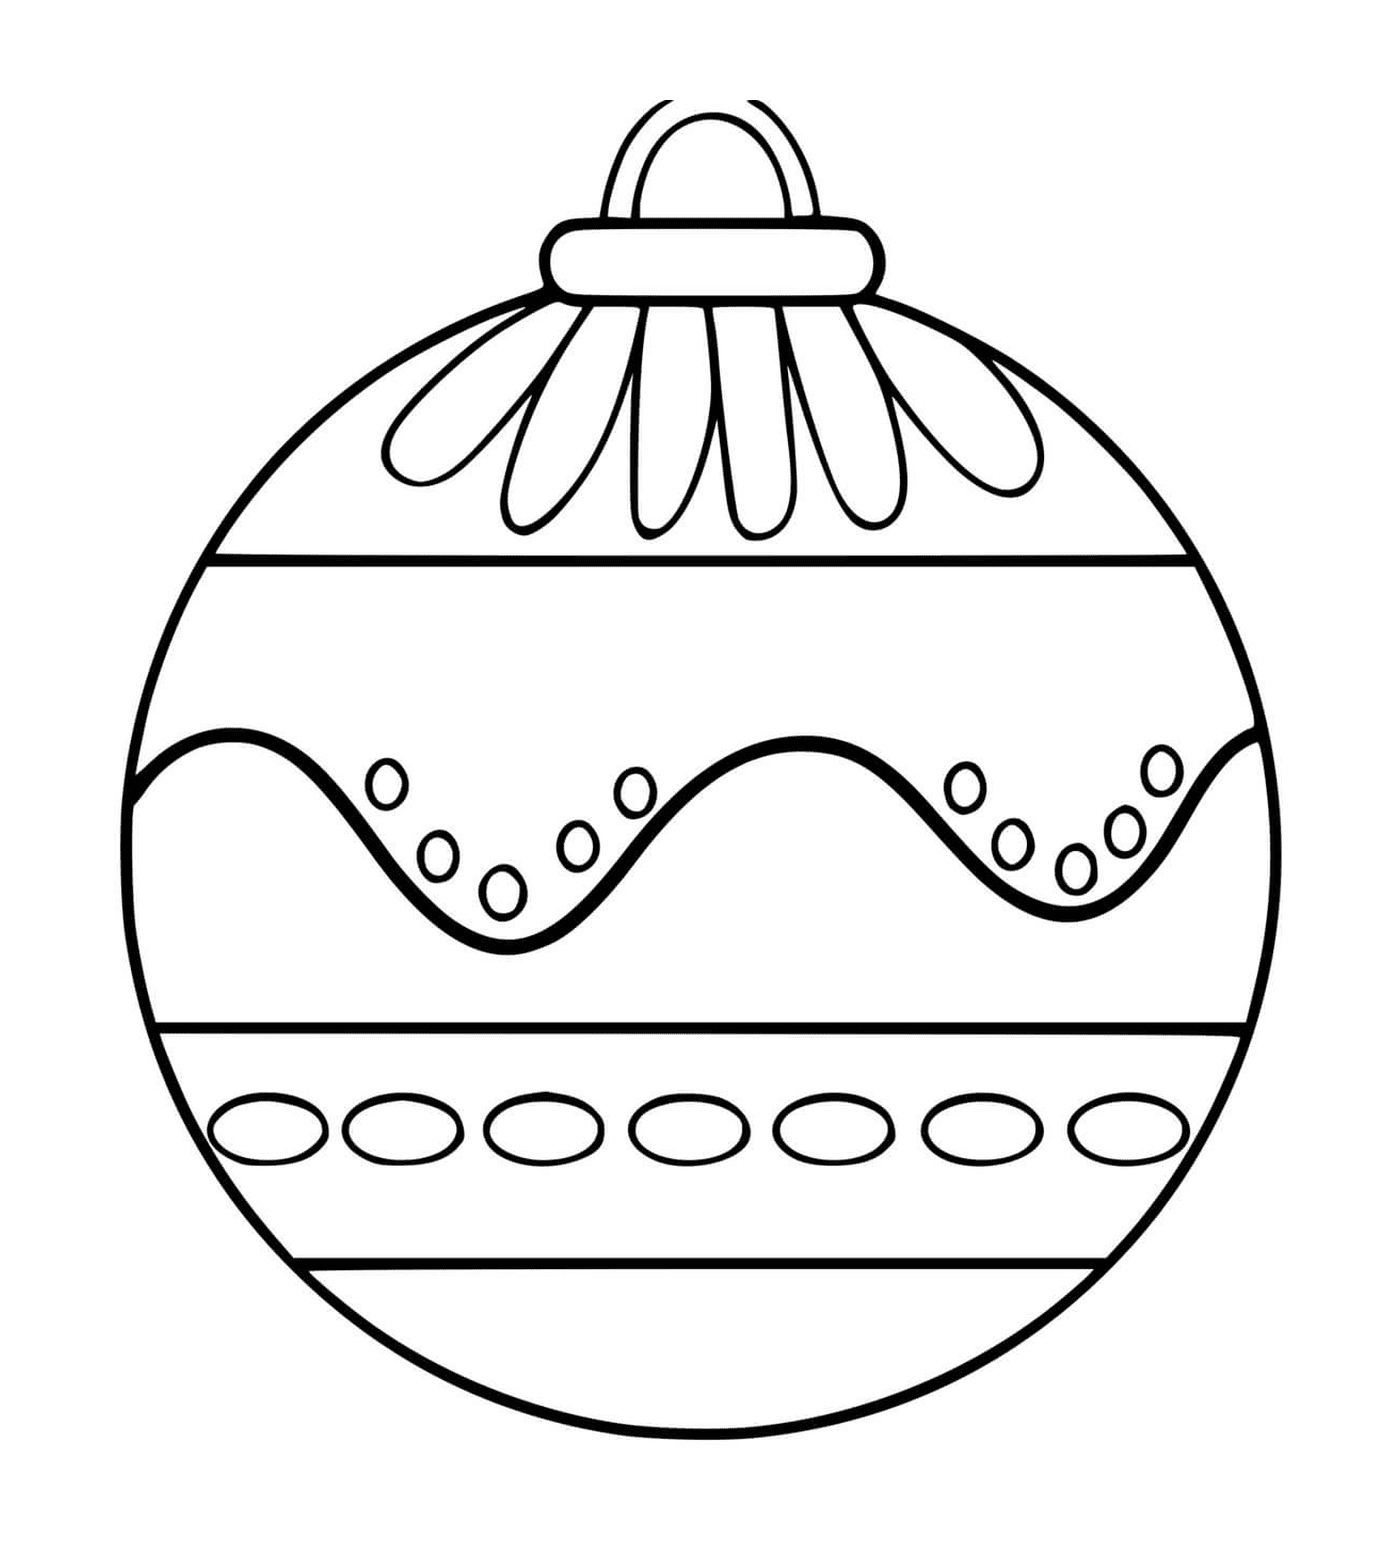   Une boule de Noël avec des motifs variés 